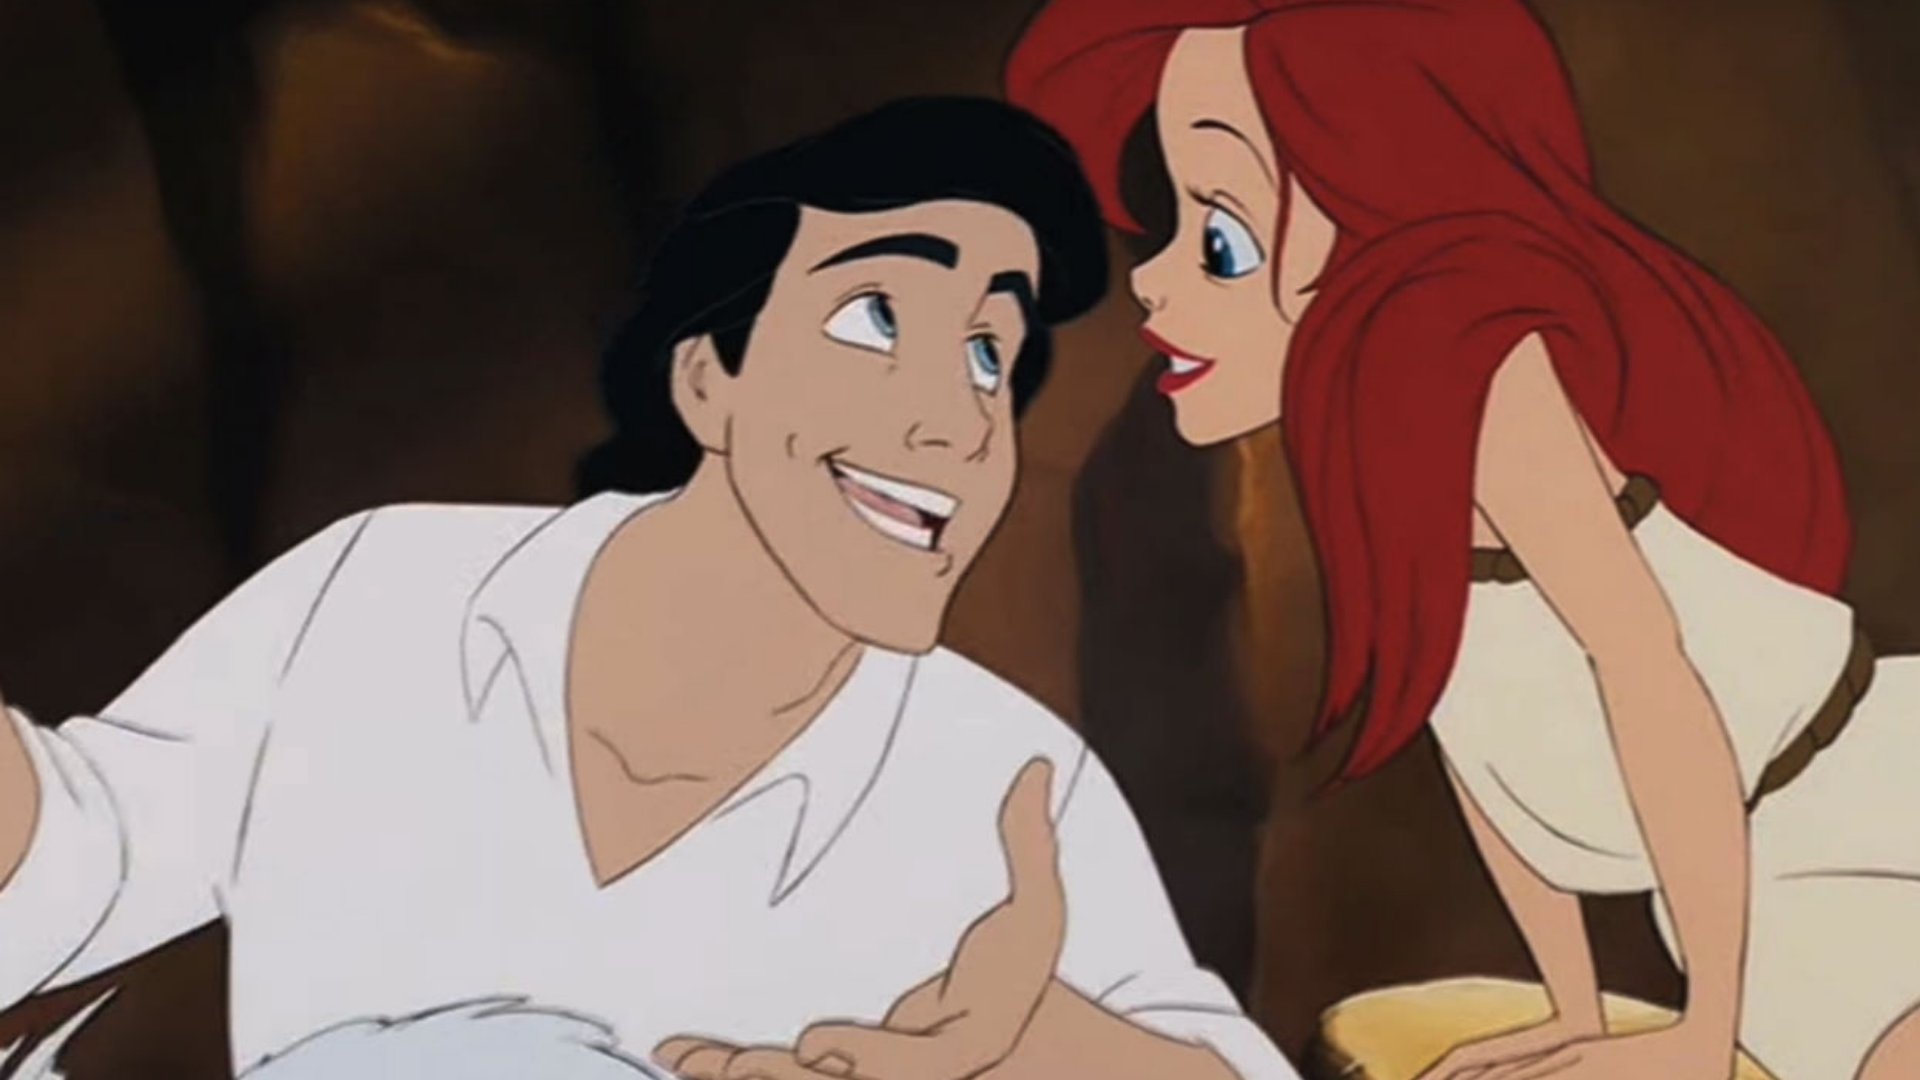 Ariel e o príncipe Eric juntos enquanto conversam